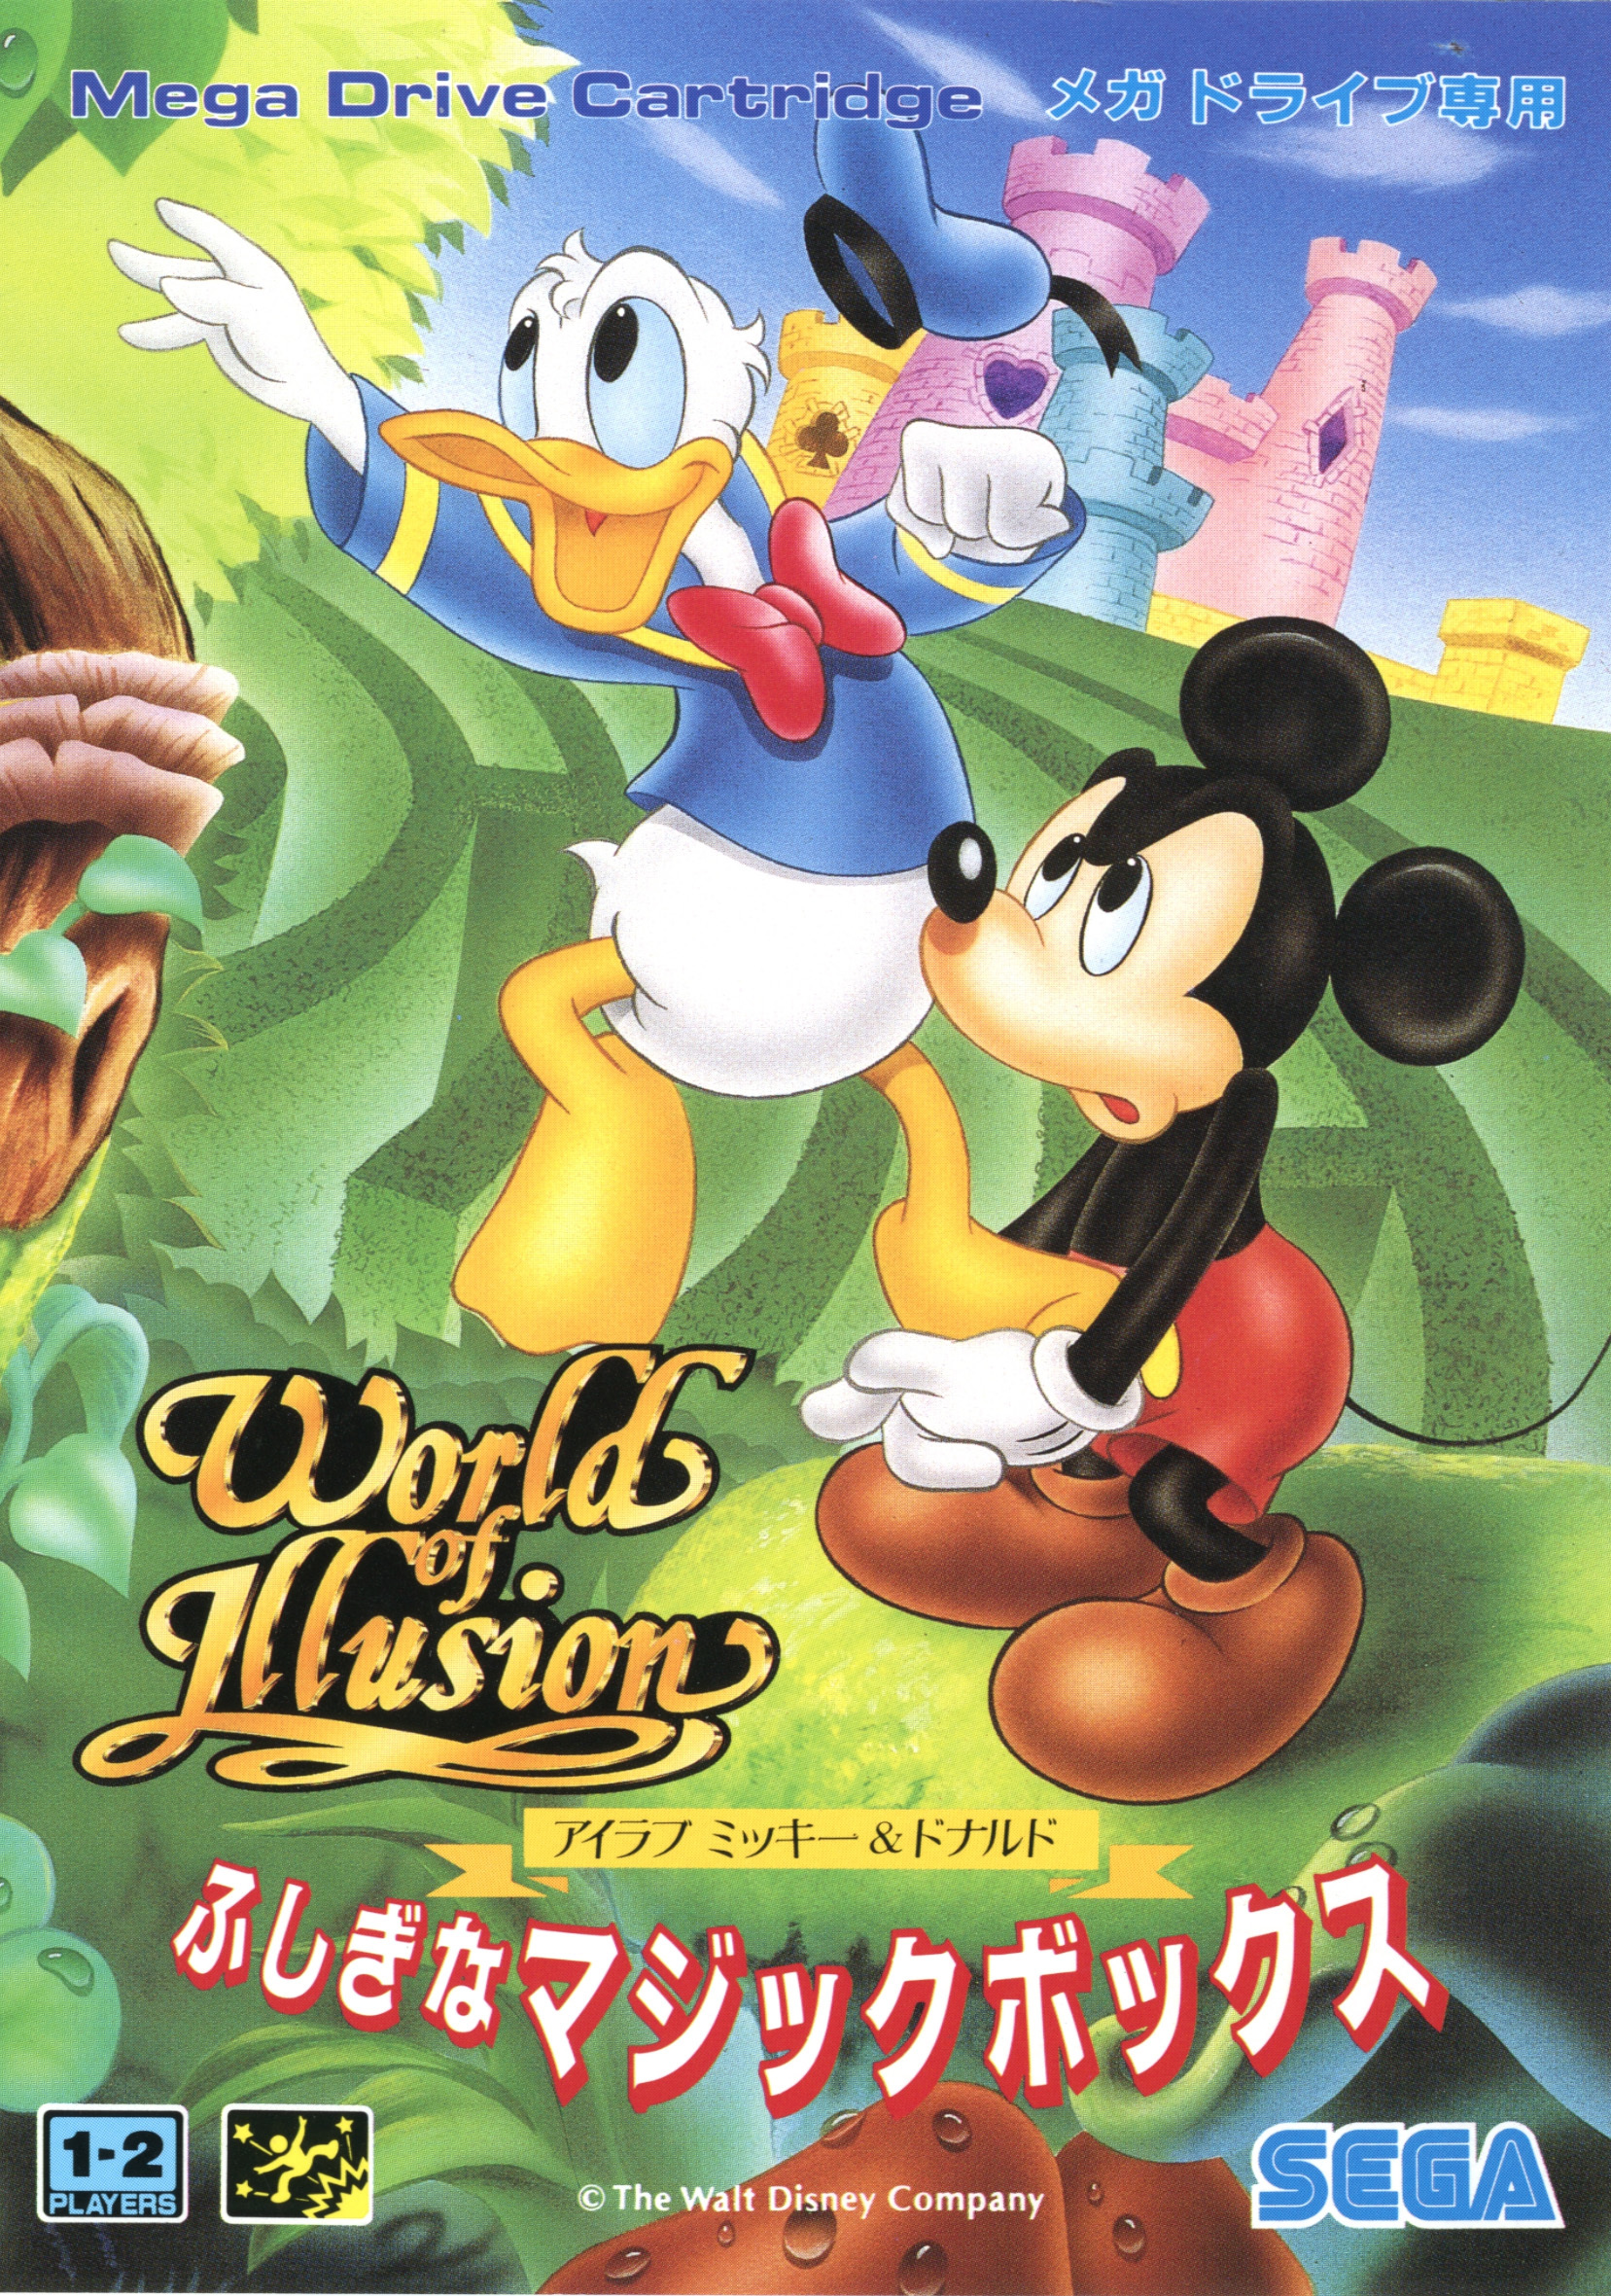 Игры сега микки. Игра Микки Маус сега. World of Illusion starring Mickey Mouse.